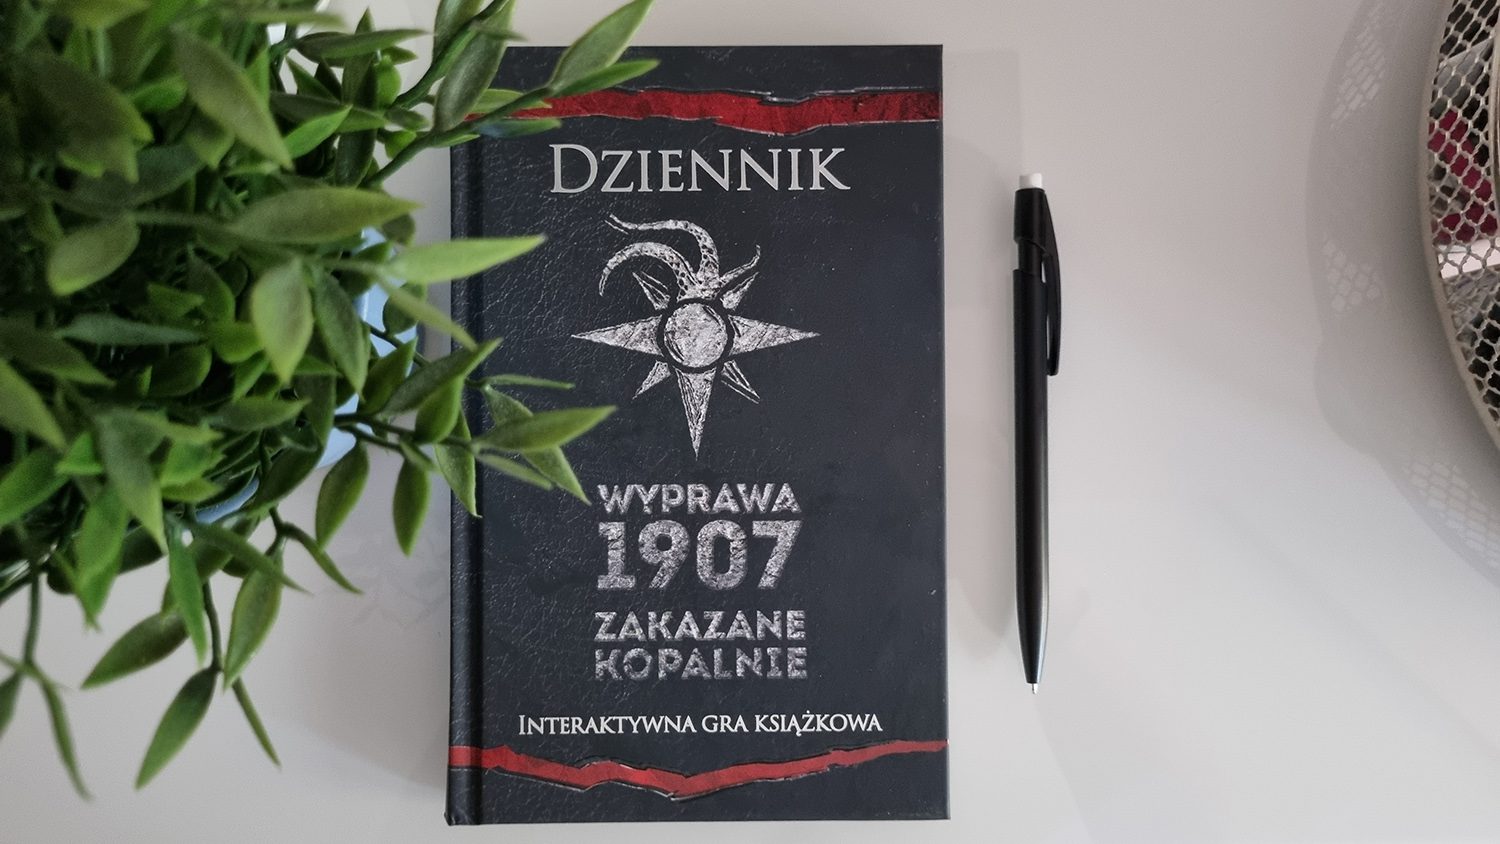 Kopalnia z koszmarów. „Dziennik. Wyprawa 1907: Zakazane kopalnie” – recenzja interaktywnej gry książkowej